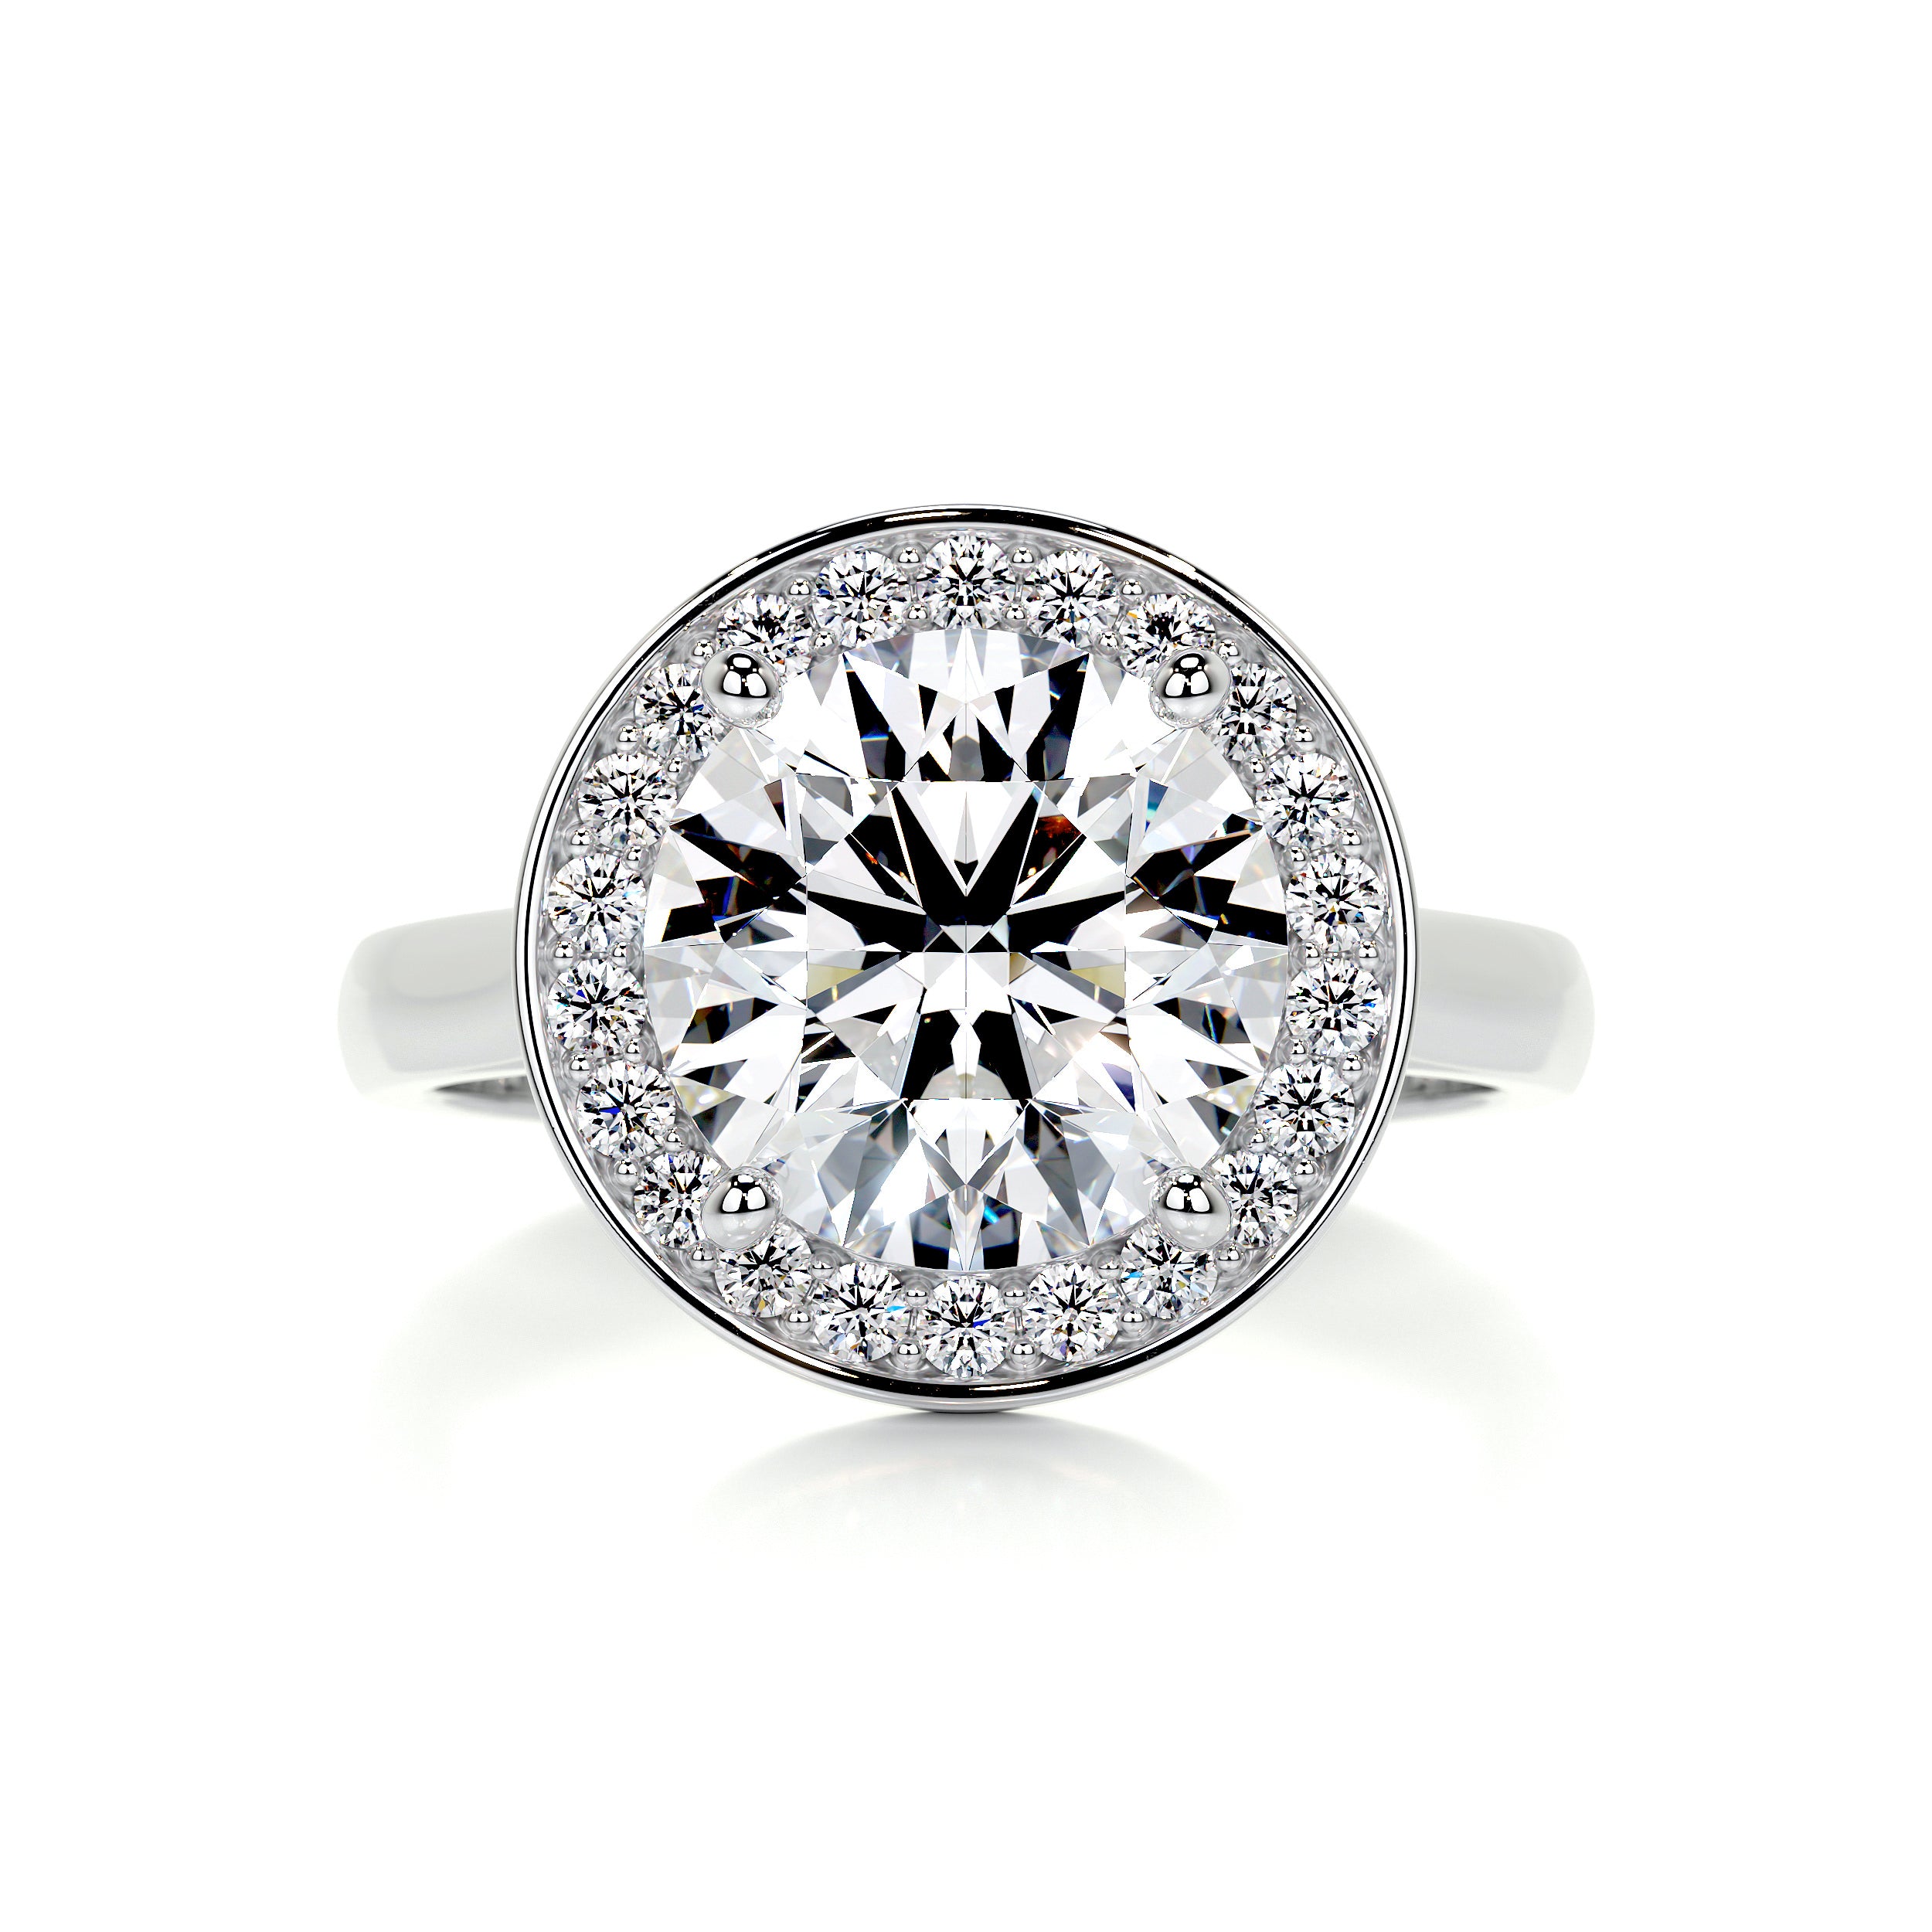 Charlie Diamond Engagement Ring -14K White Gold